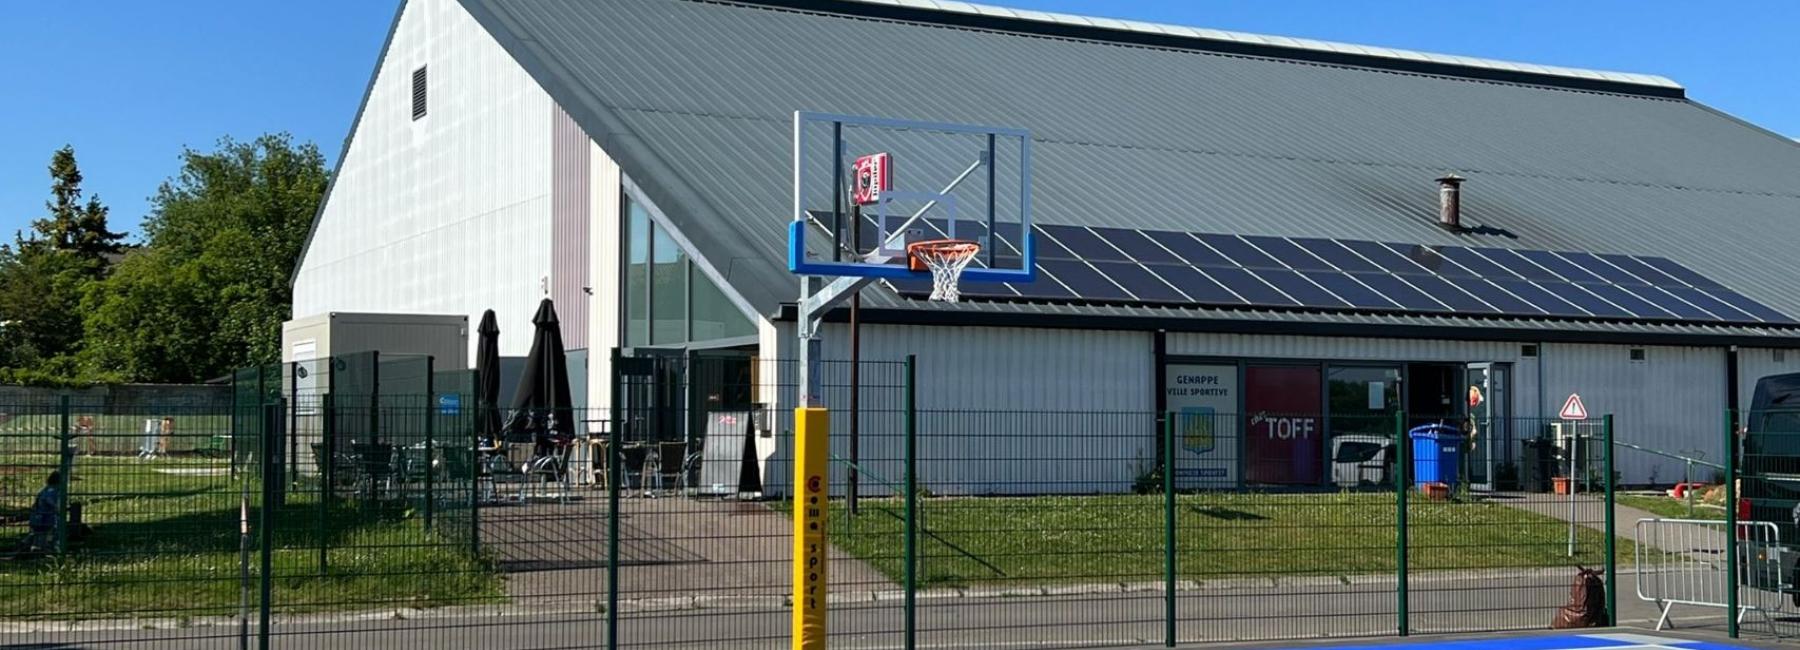 Terrain basket 3X3 centre sportif de Genappe